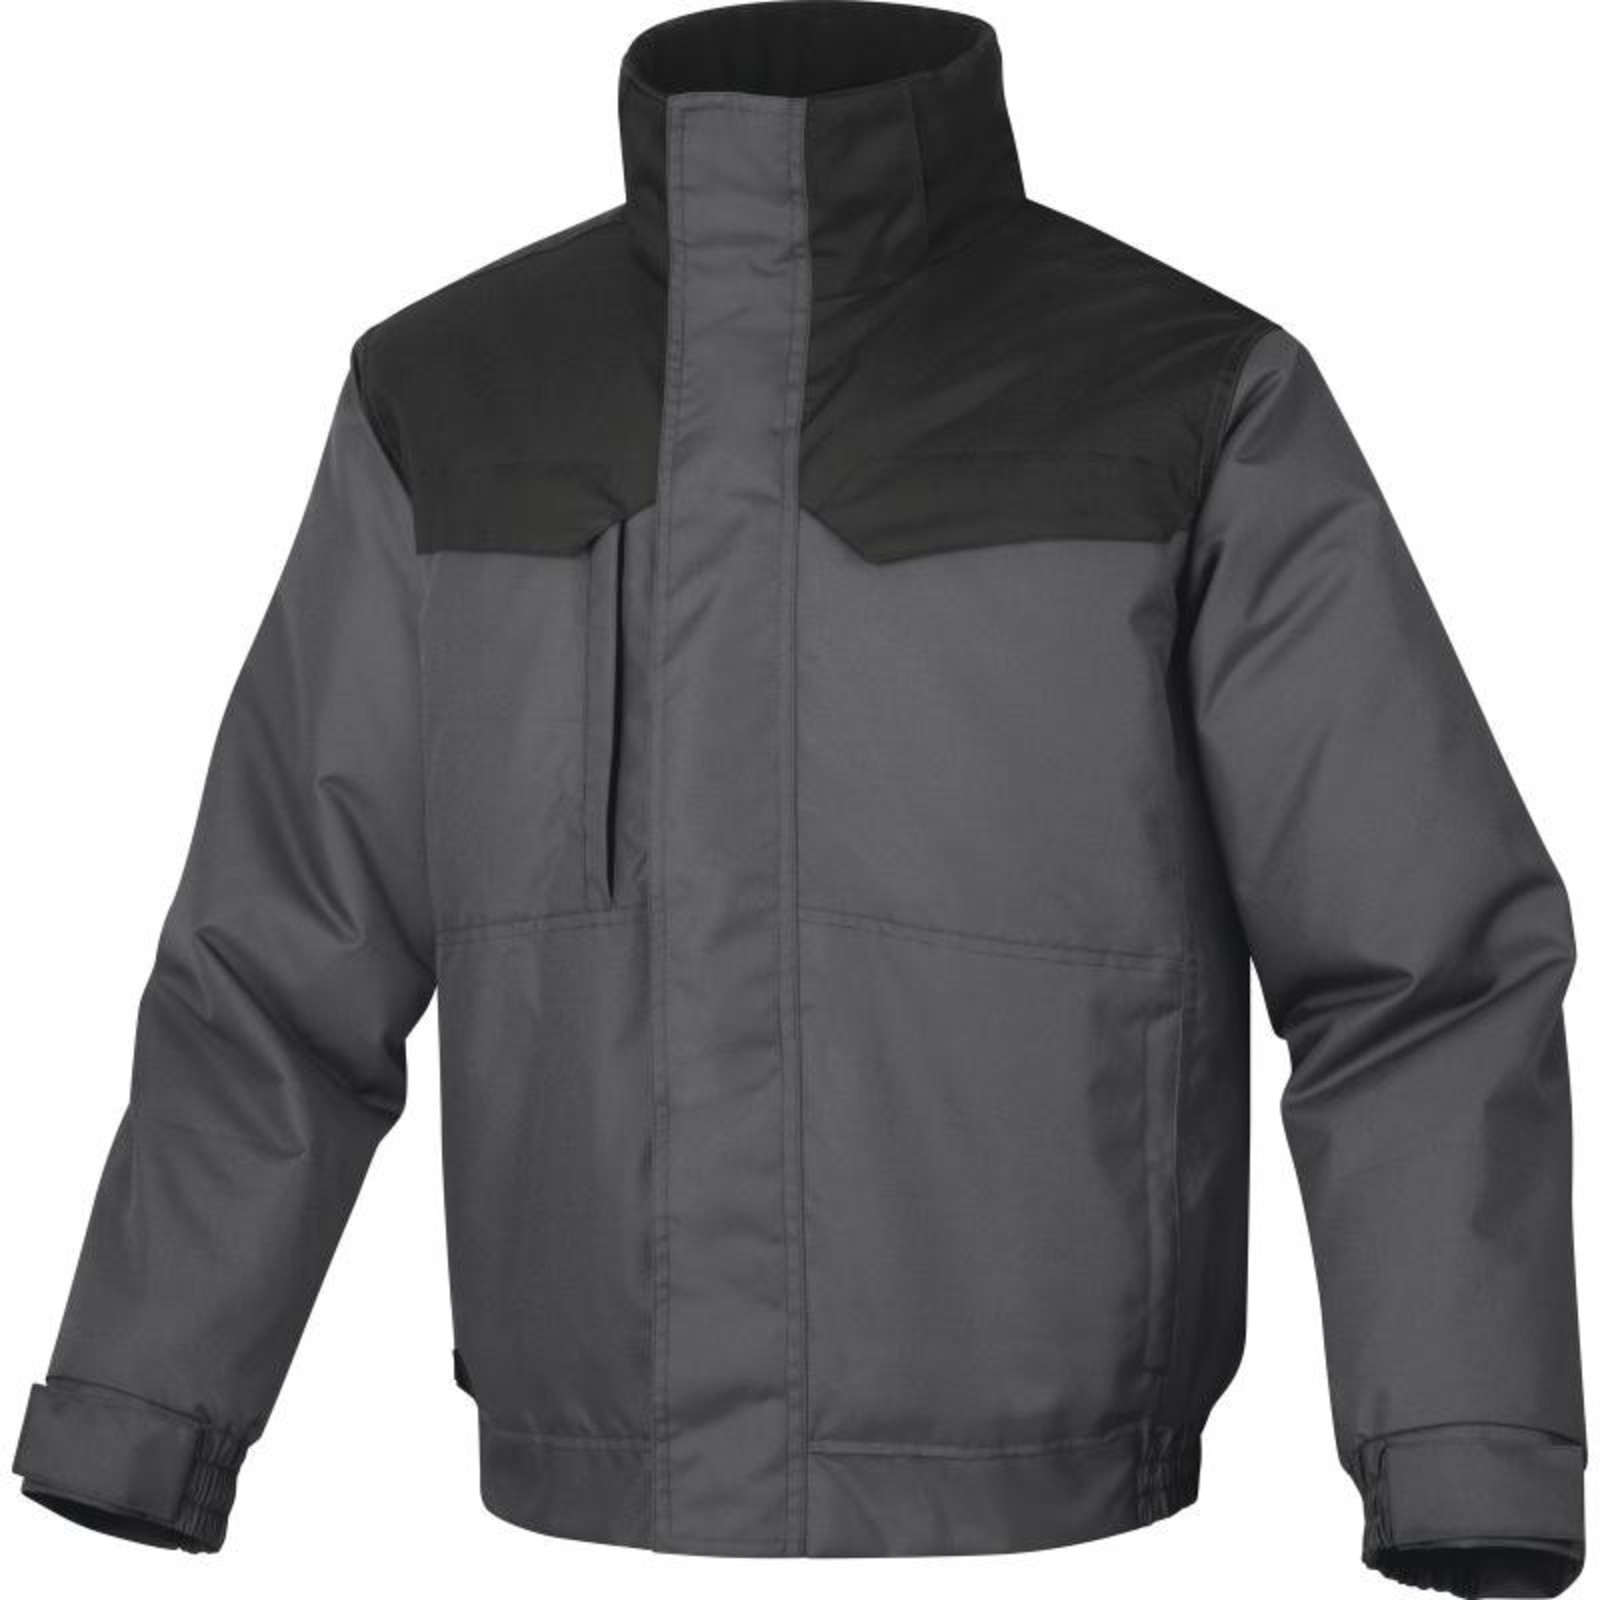 Zimná pánska bunda Delta Plus Northwood3 - veľkosť: S, farba: sivá/čierna